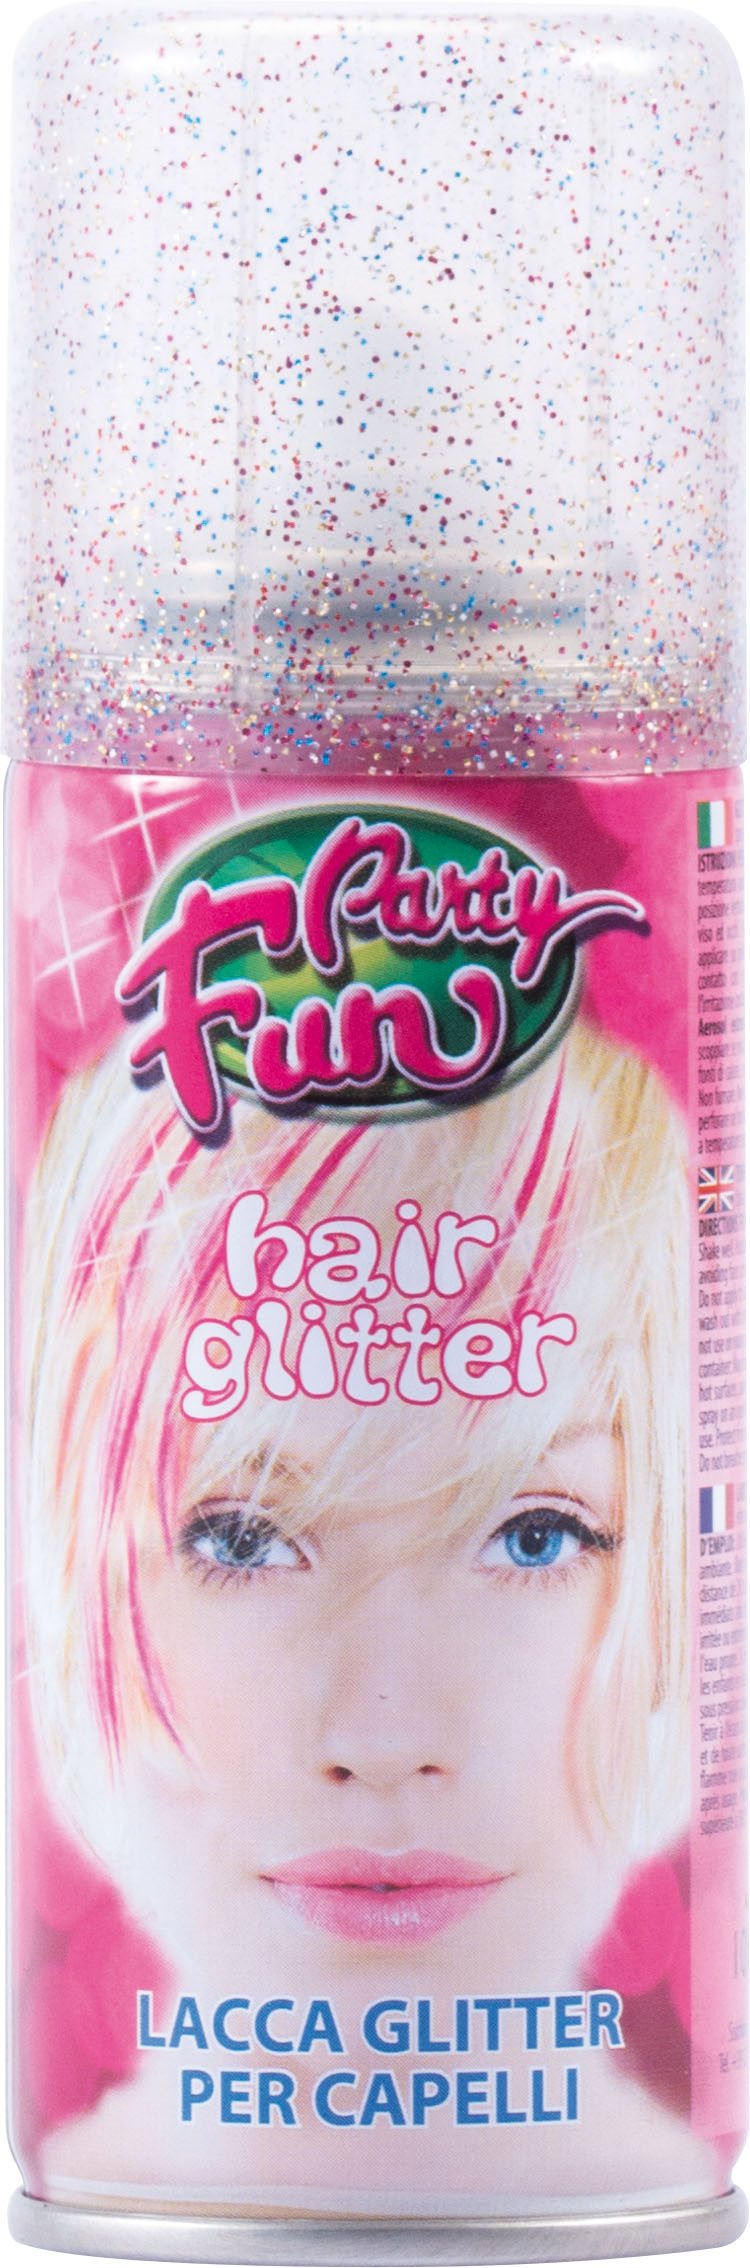 LIBRO_Glitter Haarspray